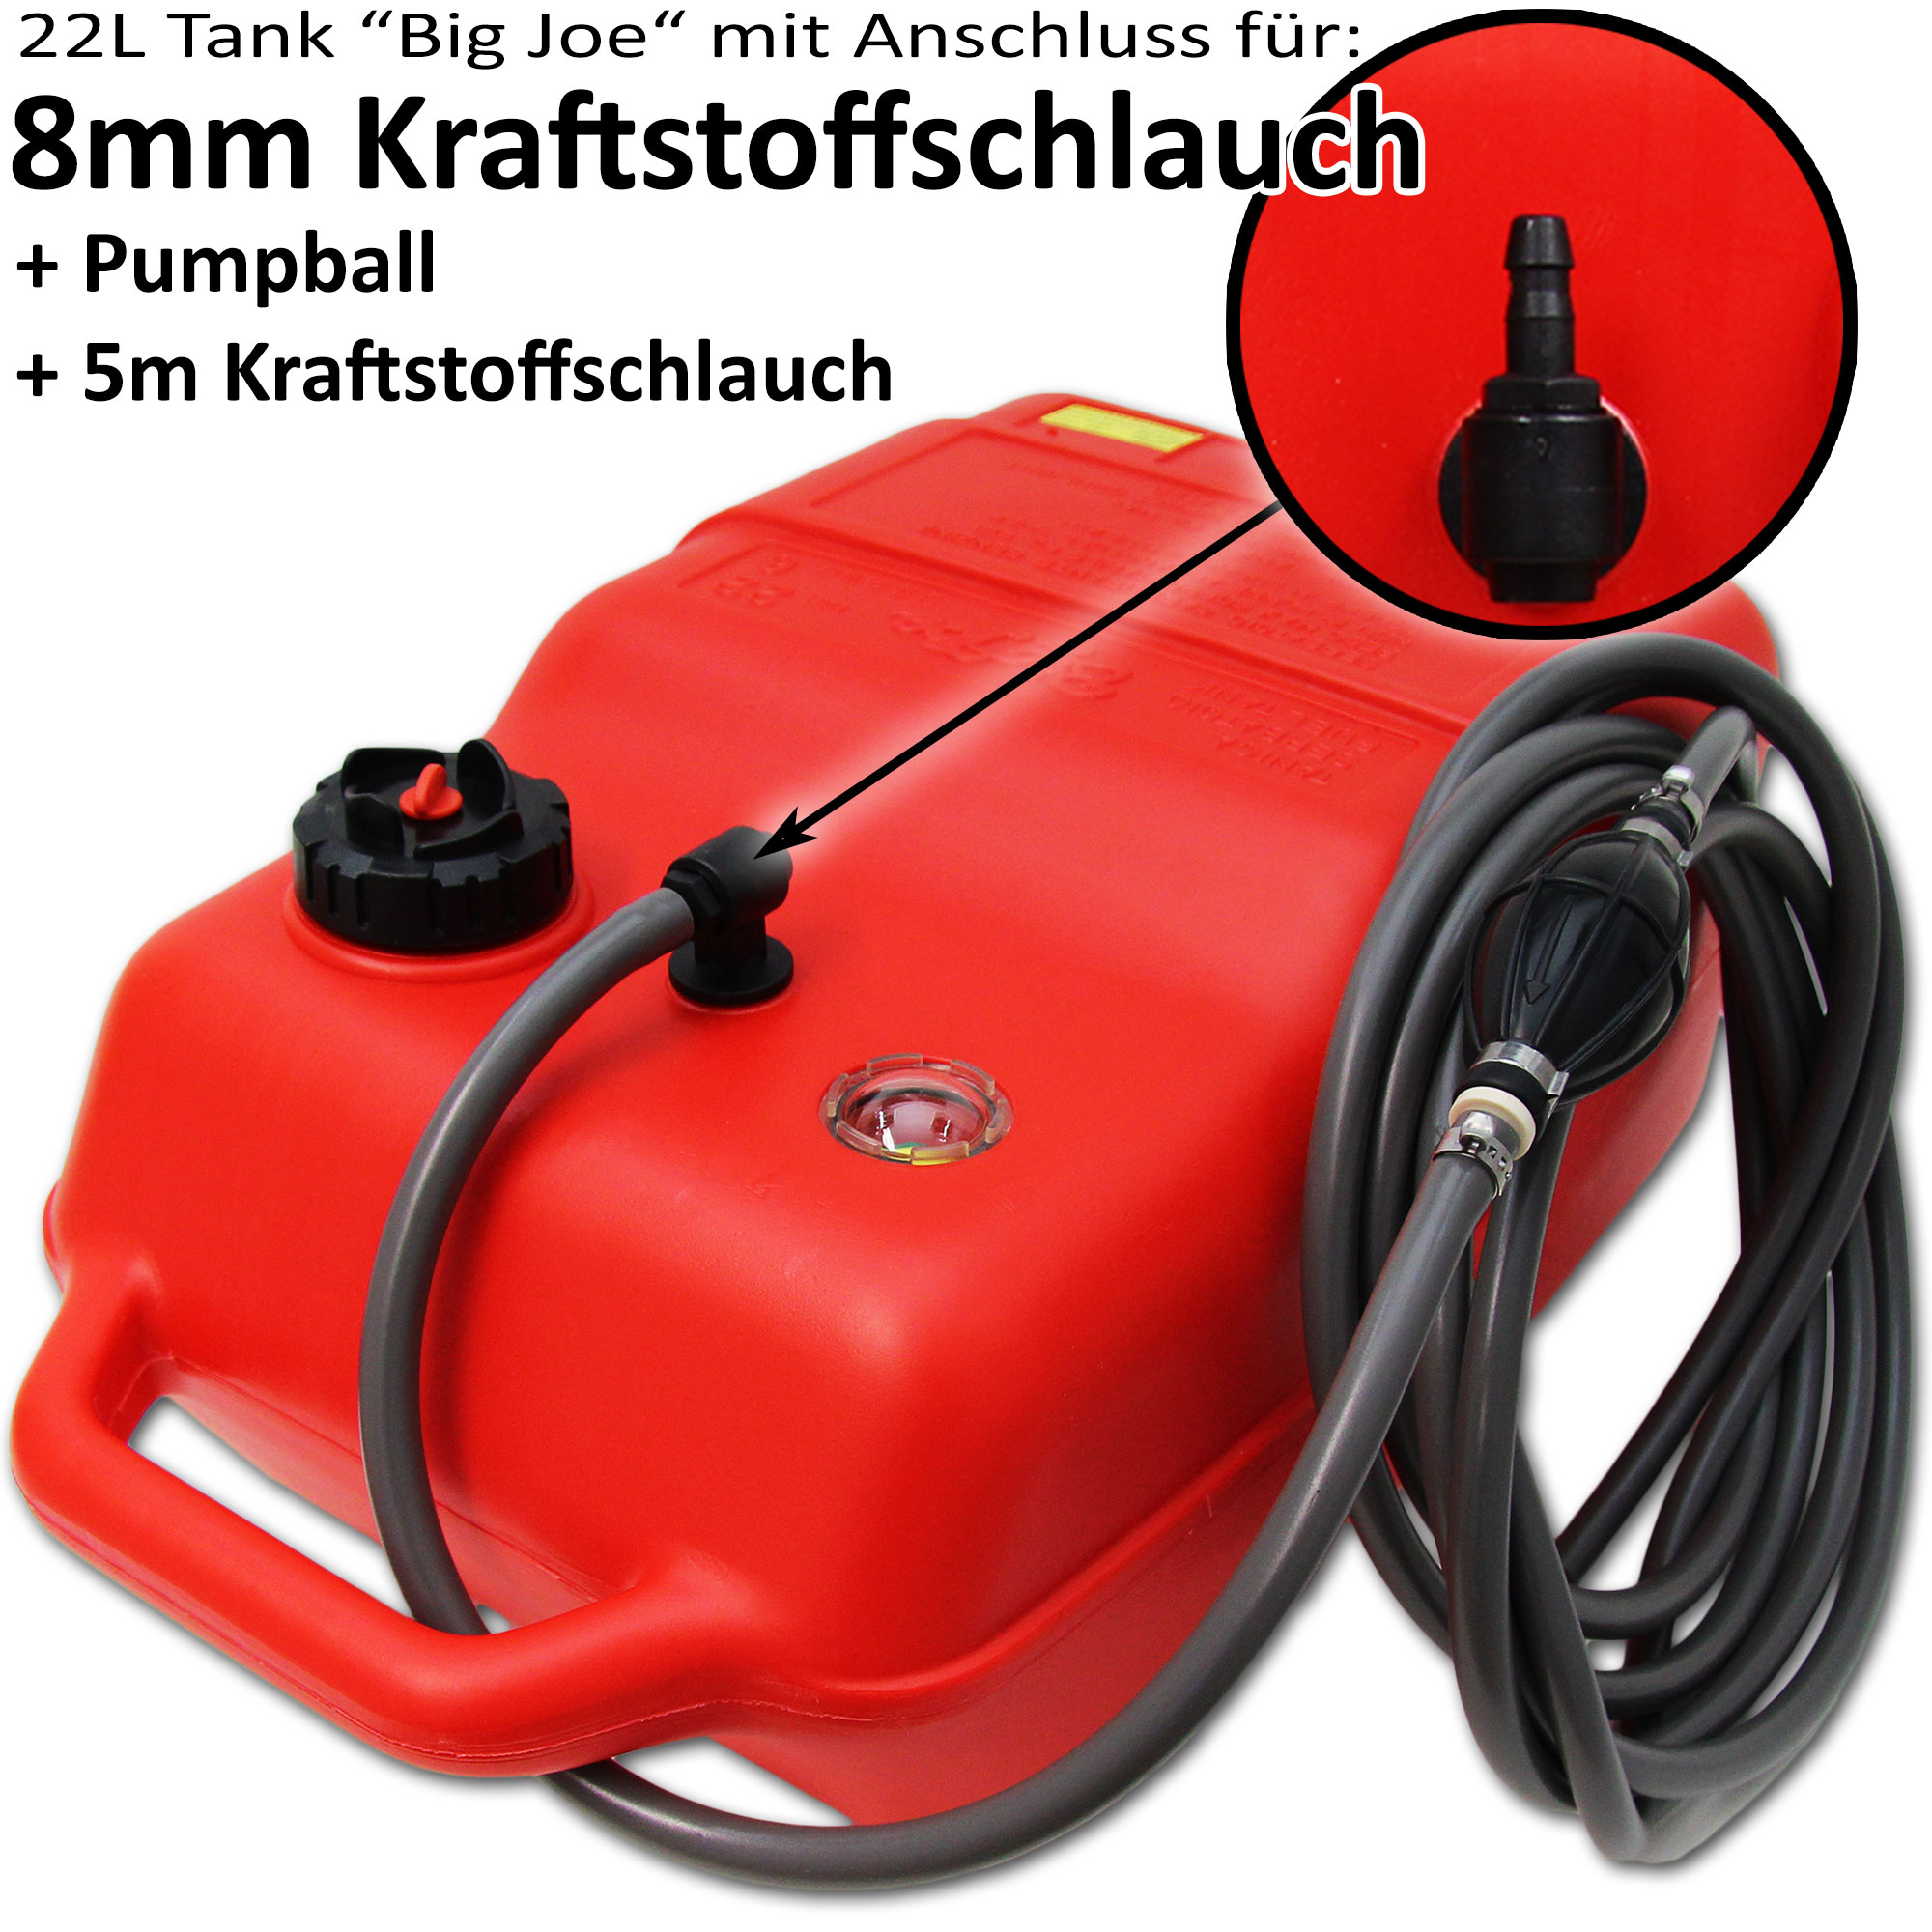 Kraftstofftank rot / Anschlussnippel (8mm) / 5m Schlauch / Füllstandsanzeige manuell